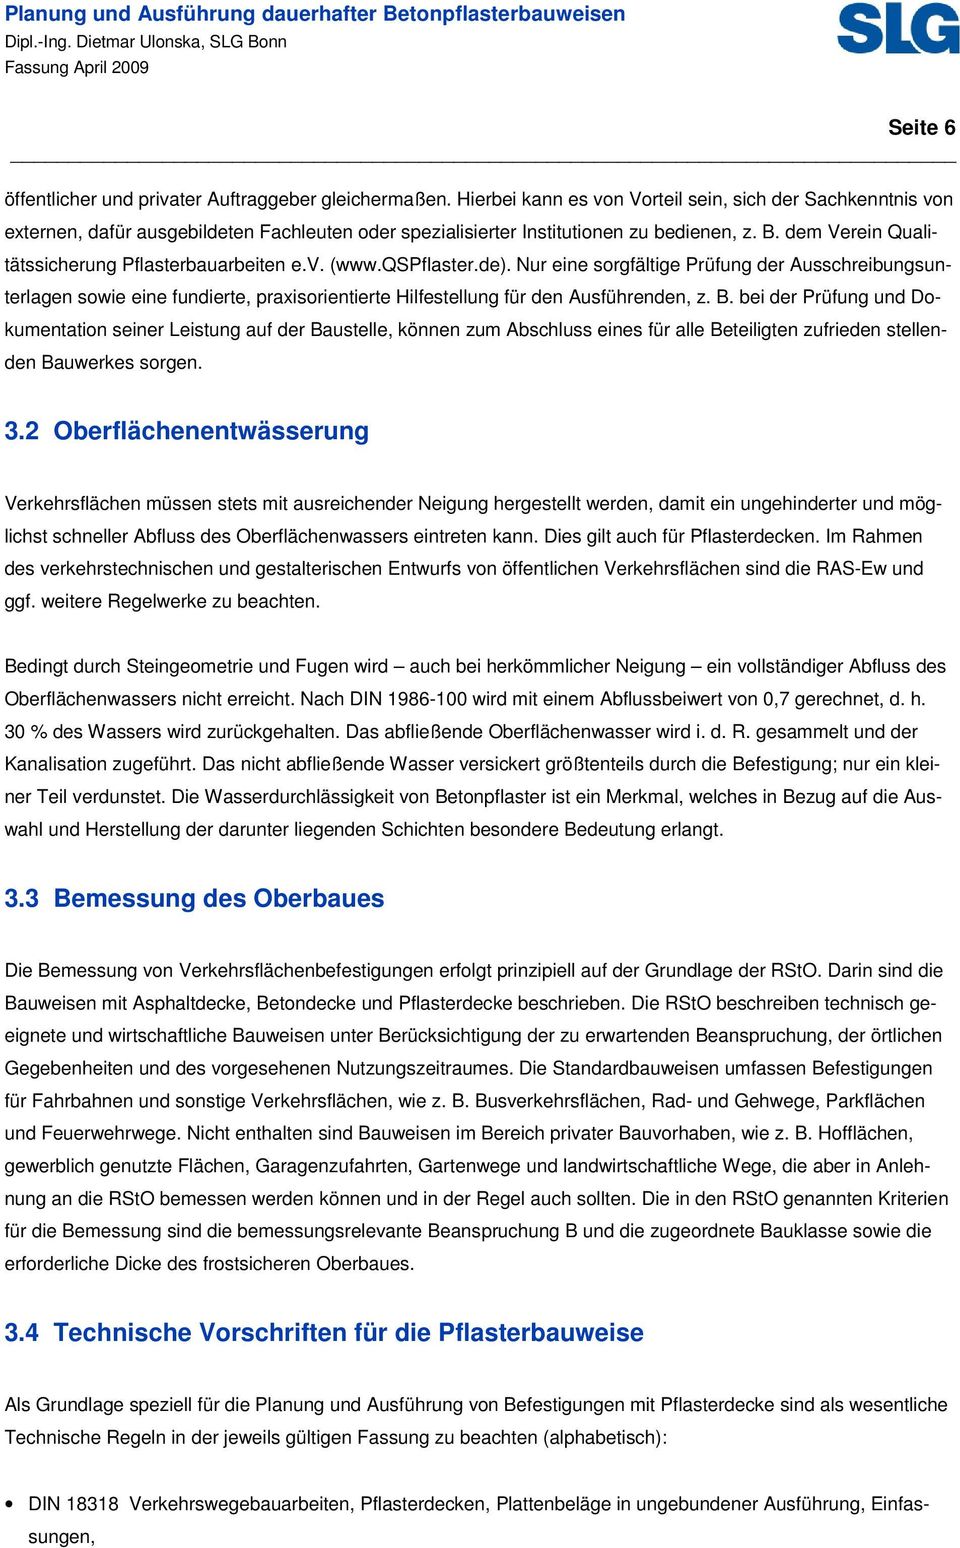 dem Verein Qualitätssicherung Pflasterbauarbeiten e.v. (www.qspflaster.de).